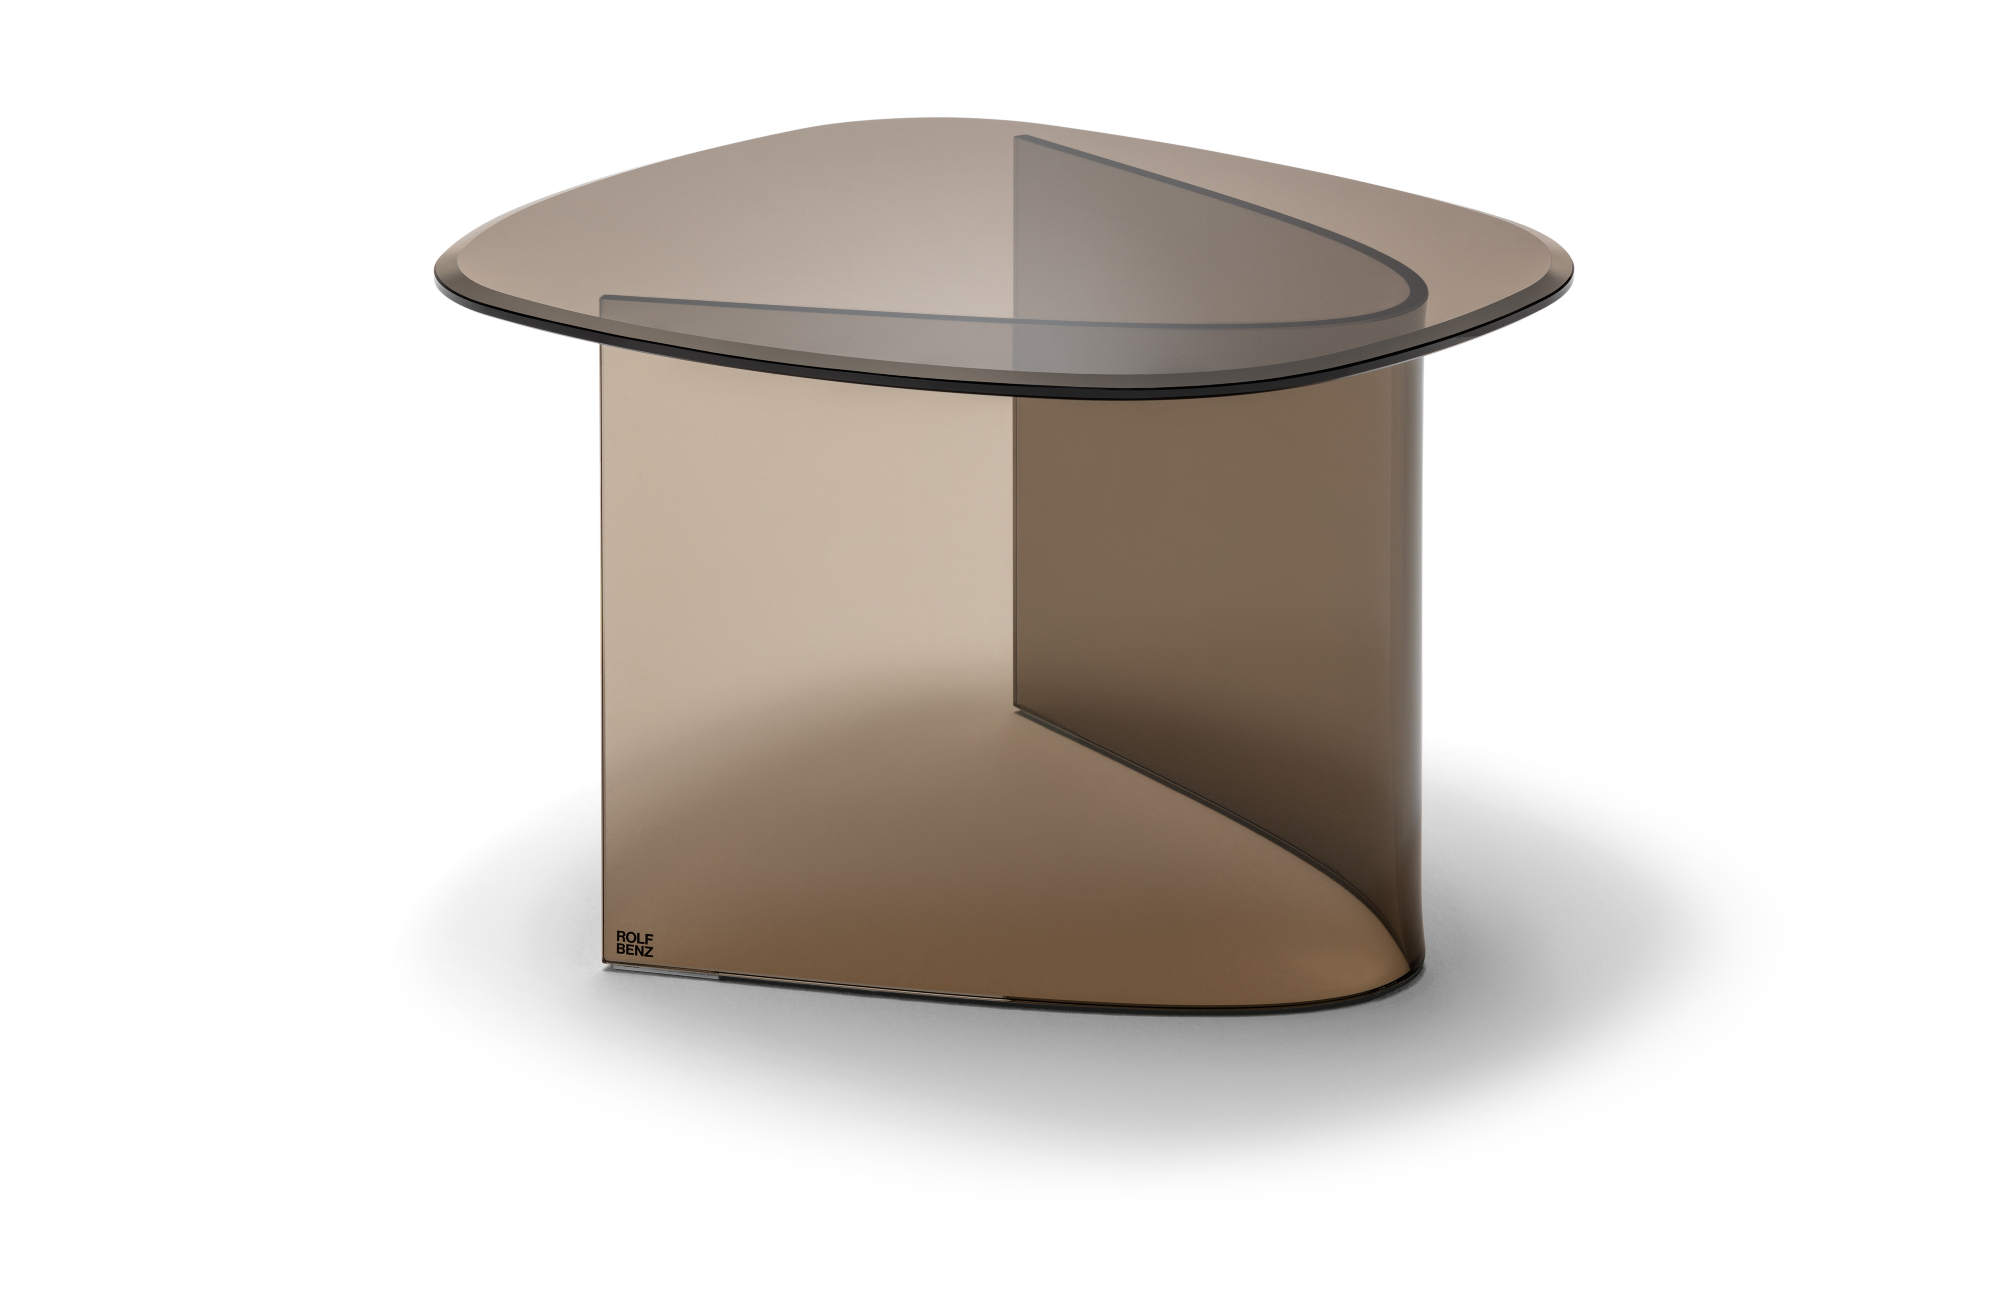 Glazen tafel met een monochrome look van Rolf Benz